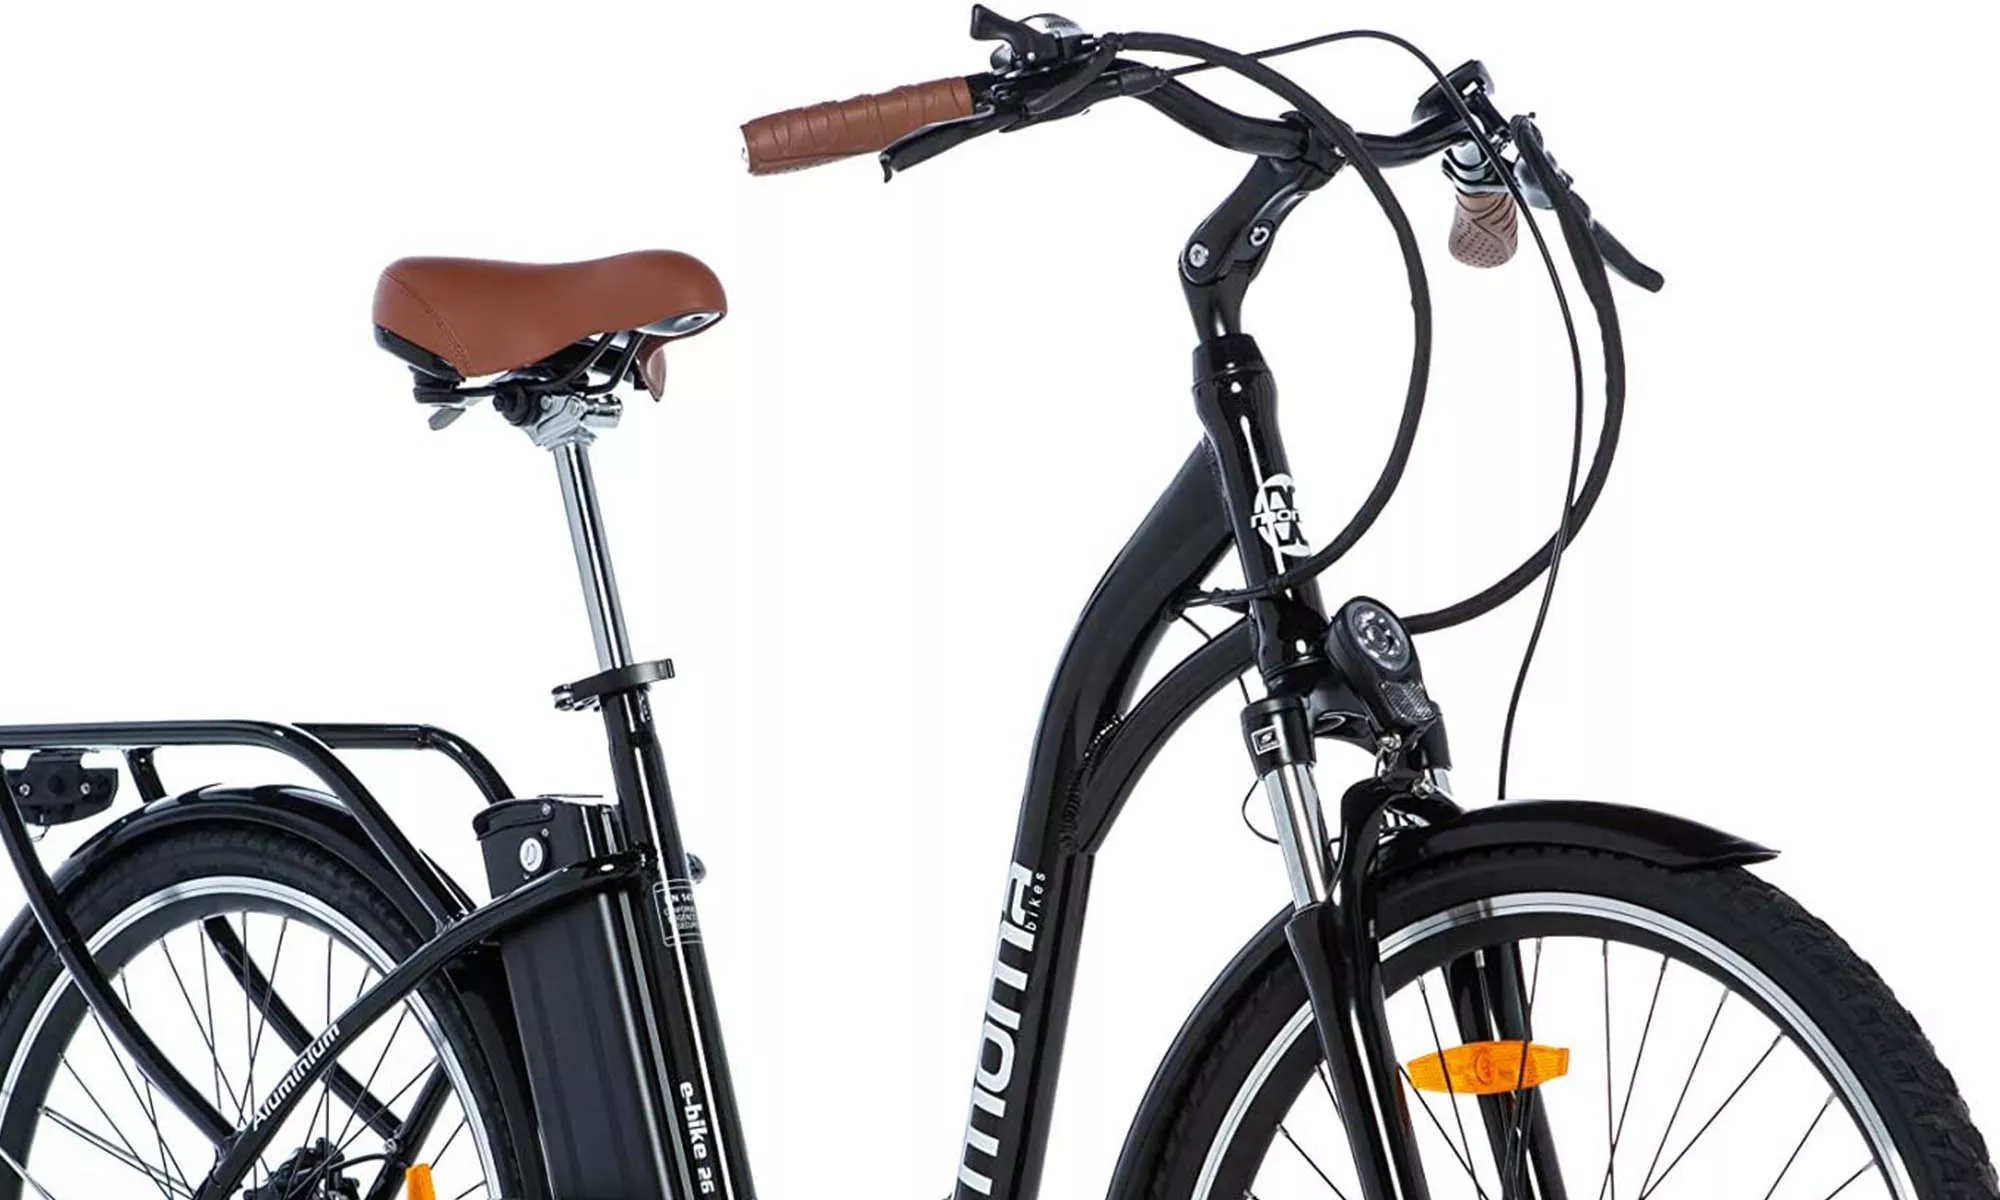 La Moma Ebike 28.3 es una bicicleta eléctrica de carácter urbano que garantiza seguridad y confort gracias a sus ruedas de gran diámetro.